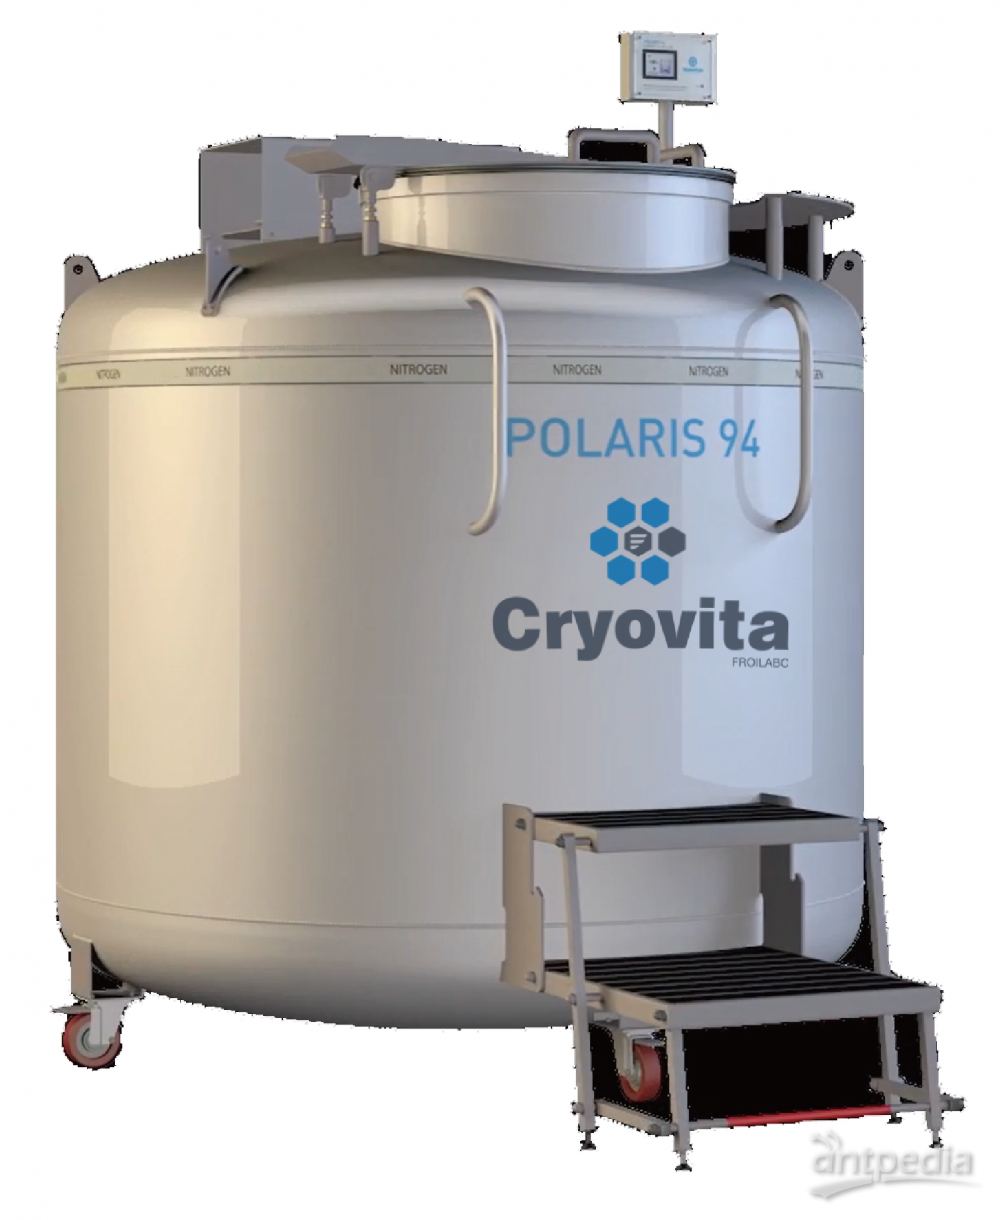 液氮罐法莱宝Froilabo 不锈钢 <em>Polaris</em>系列 应用于细胞生物学